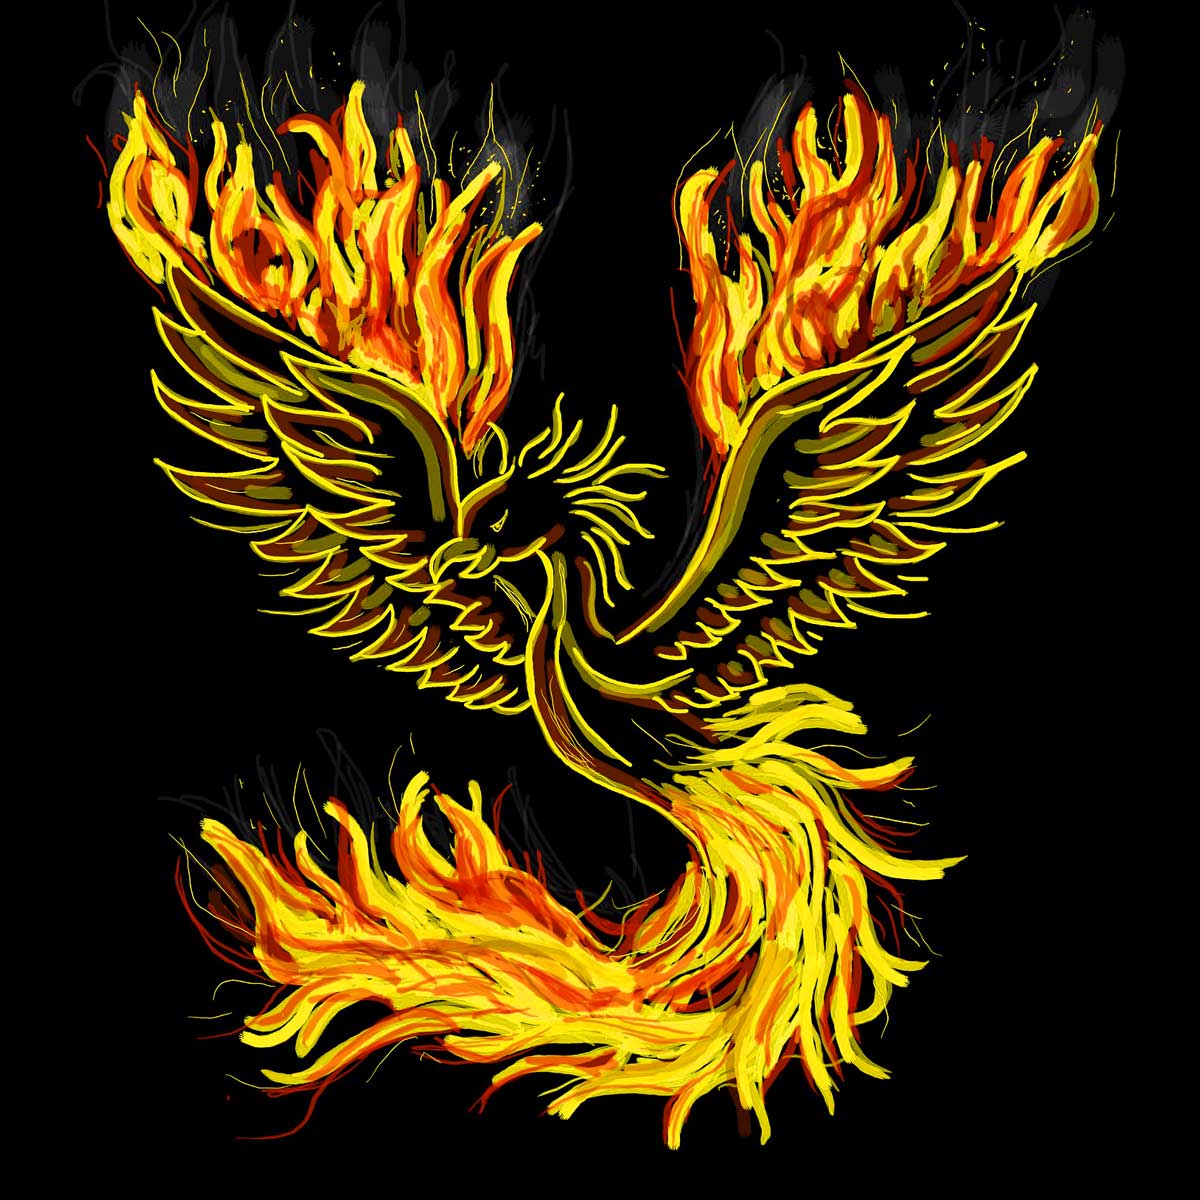 Simbología y significado espiritual del ave fénix, la criatura mitológica con la capacidad de renacer de sus propias cenizas.